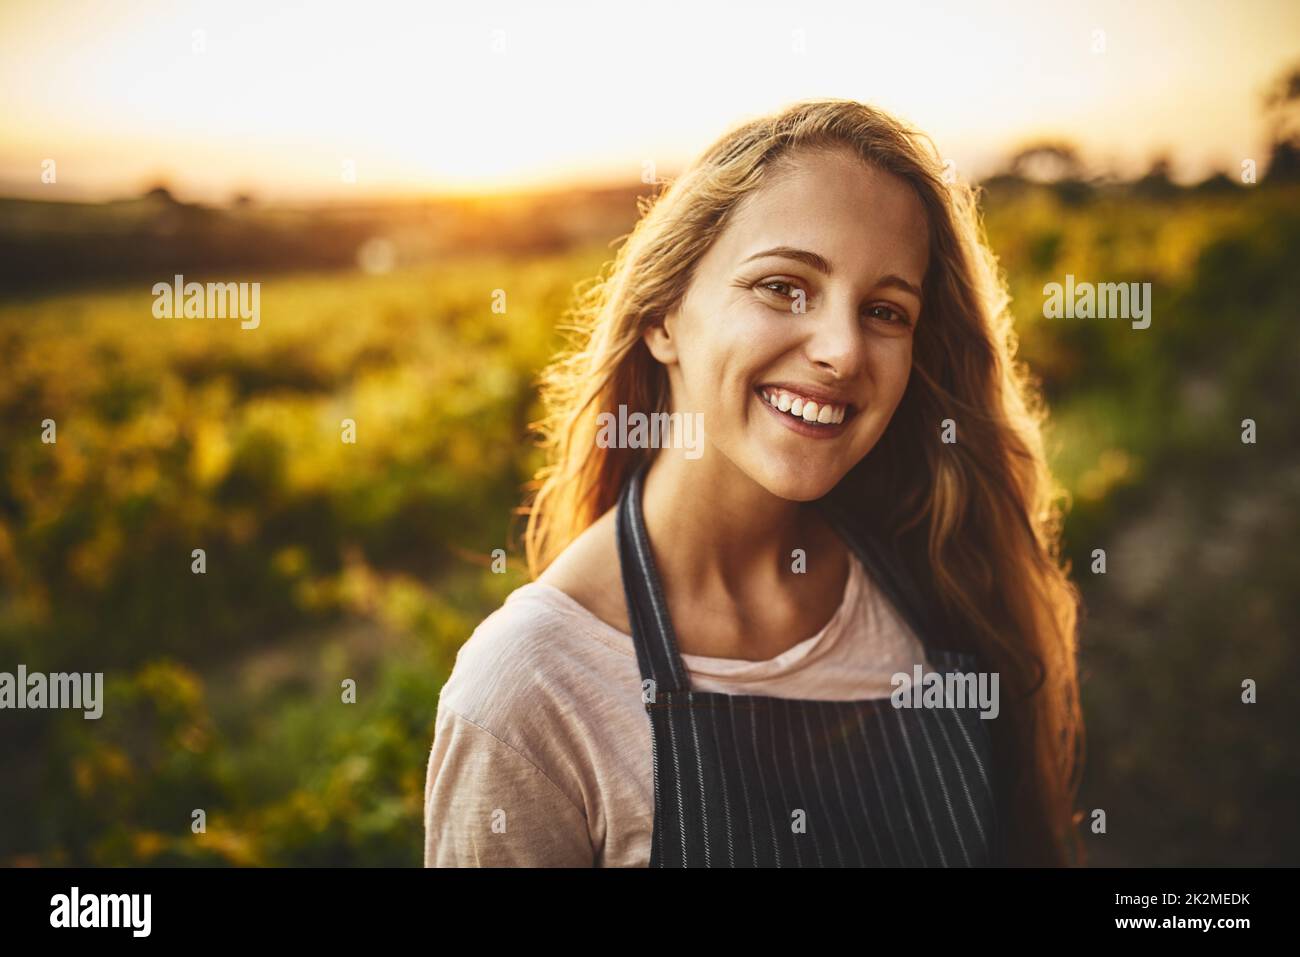 Das einfache Leben ist das glückliche Leben. Porträt einer glücklichen jungen Frau, die auf einem Bauernhof arbeitet. Stockfoto